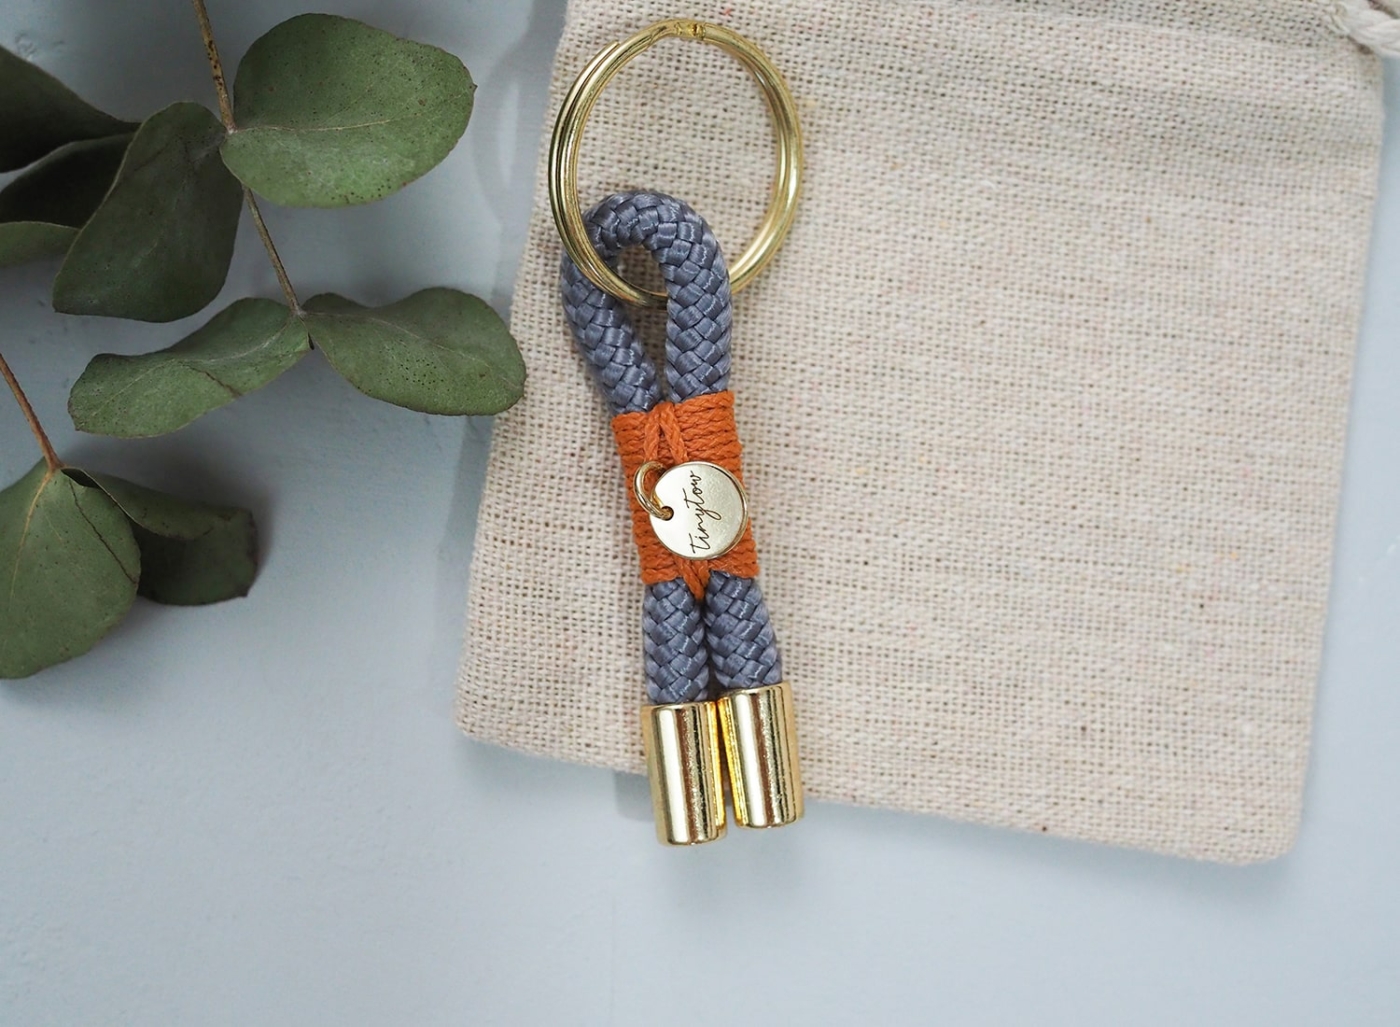 Tau Schlüsselanhänger in grau mit orangefarben Details auf Baumwollsäckchen.